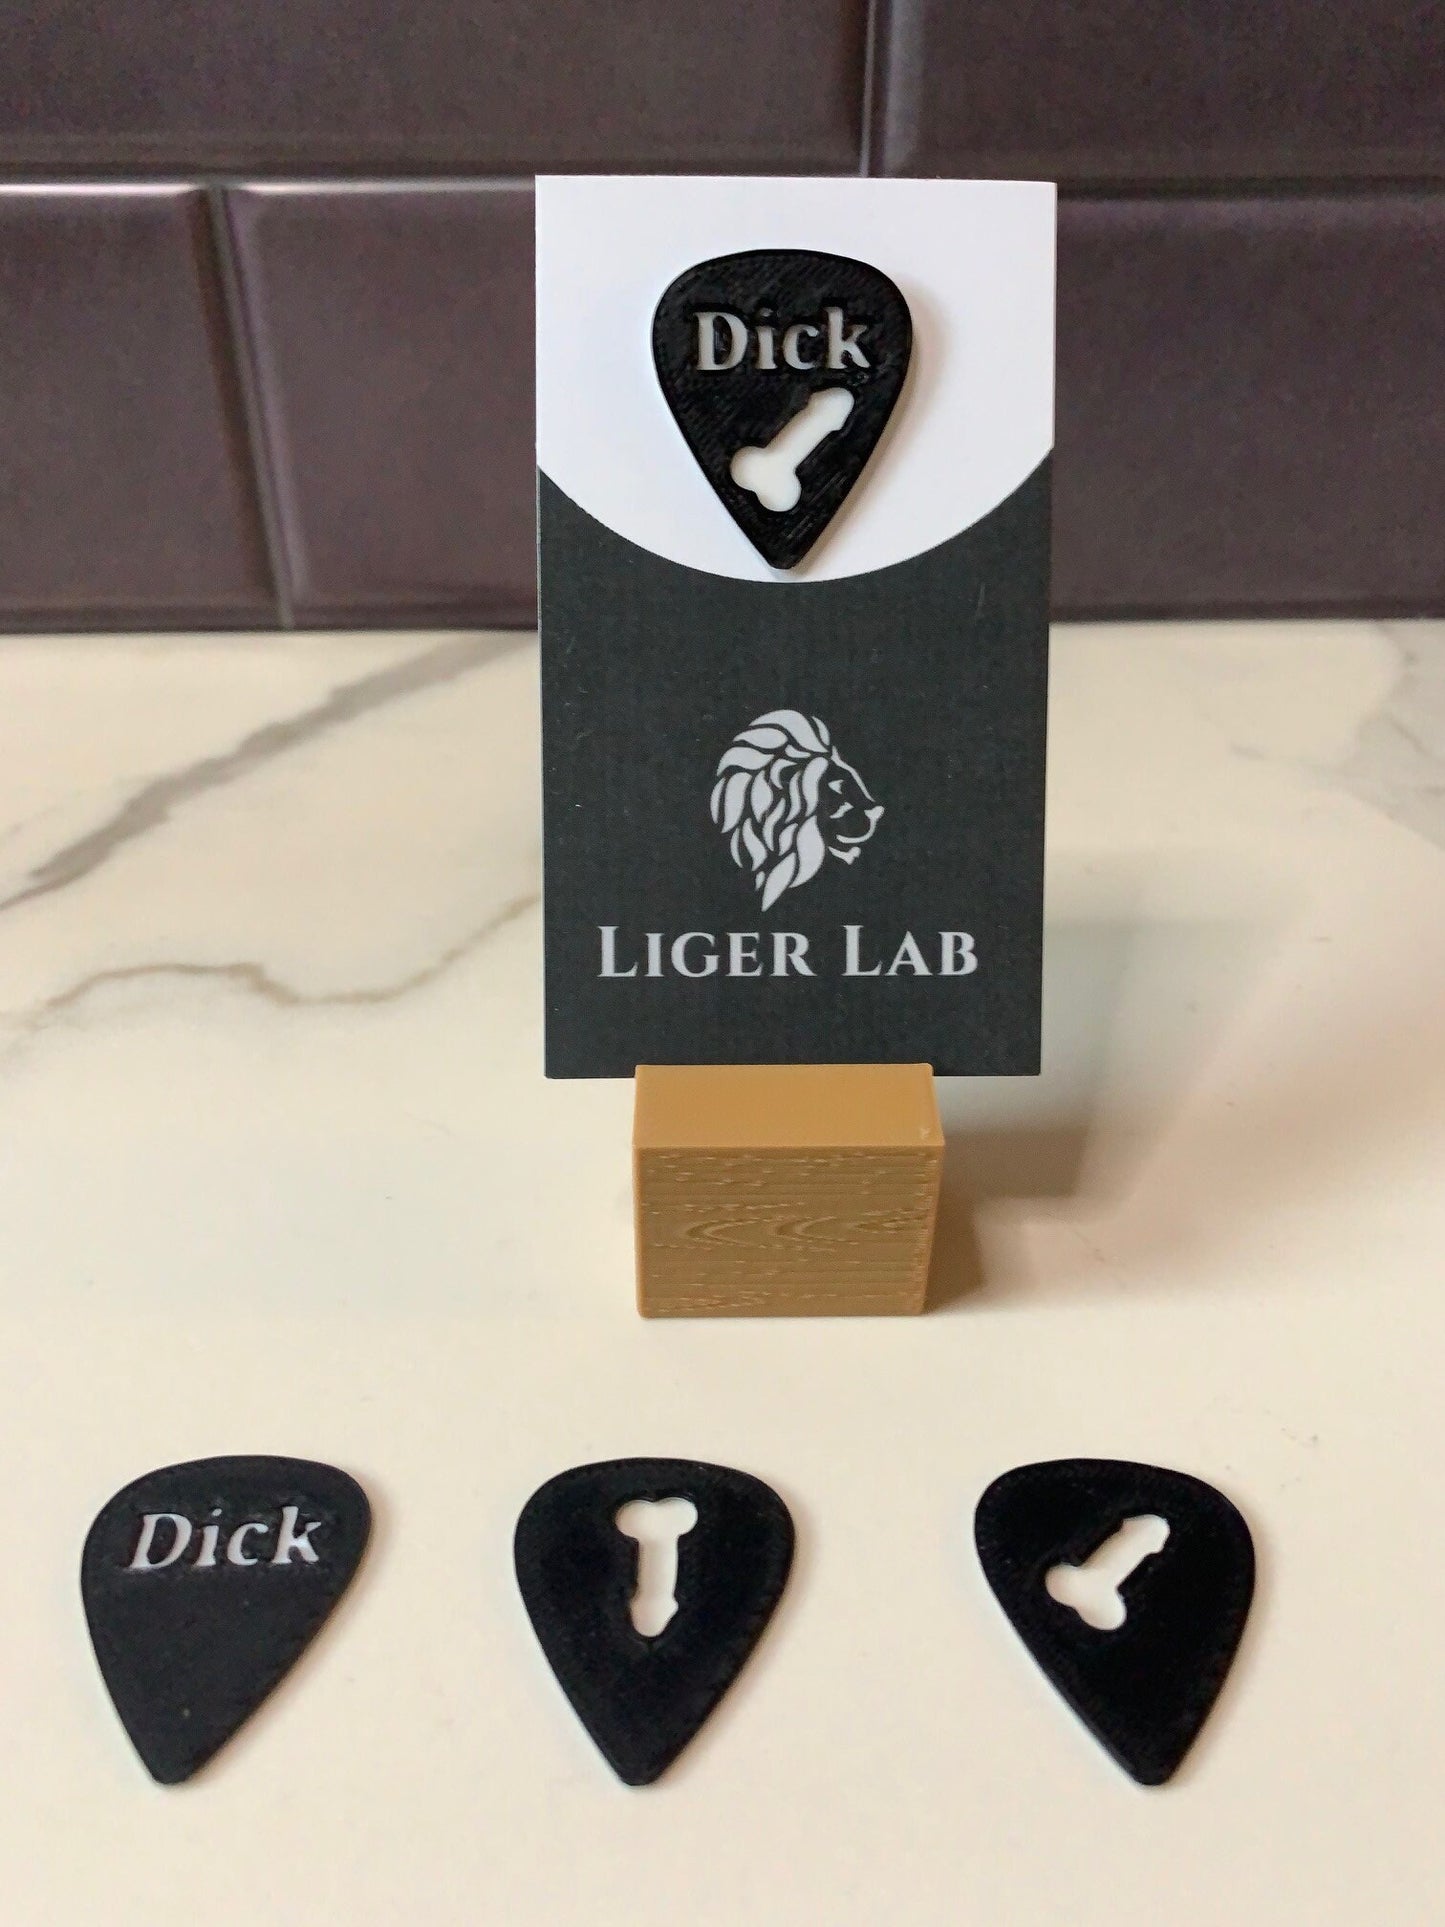 Dick Pick Gag Gift